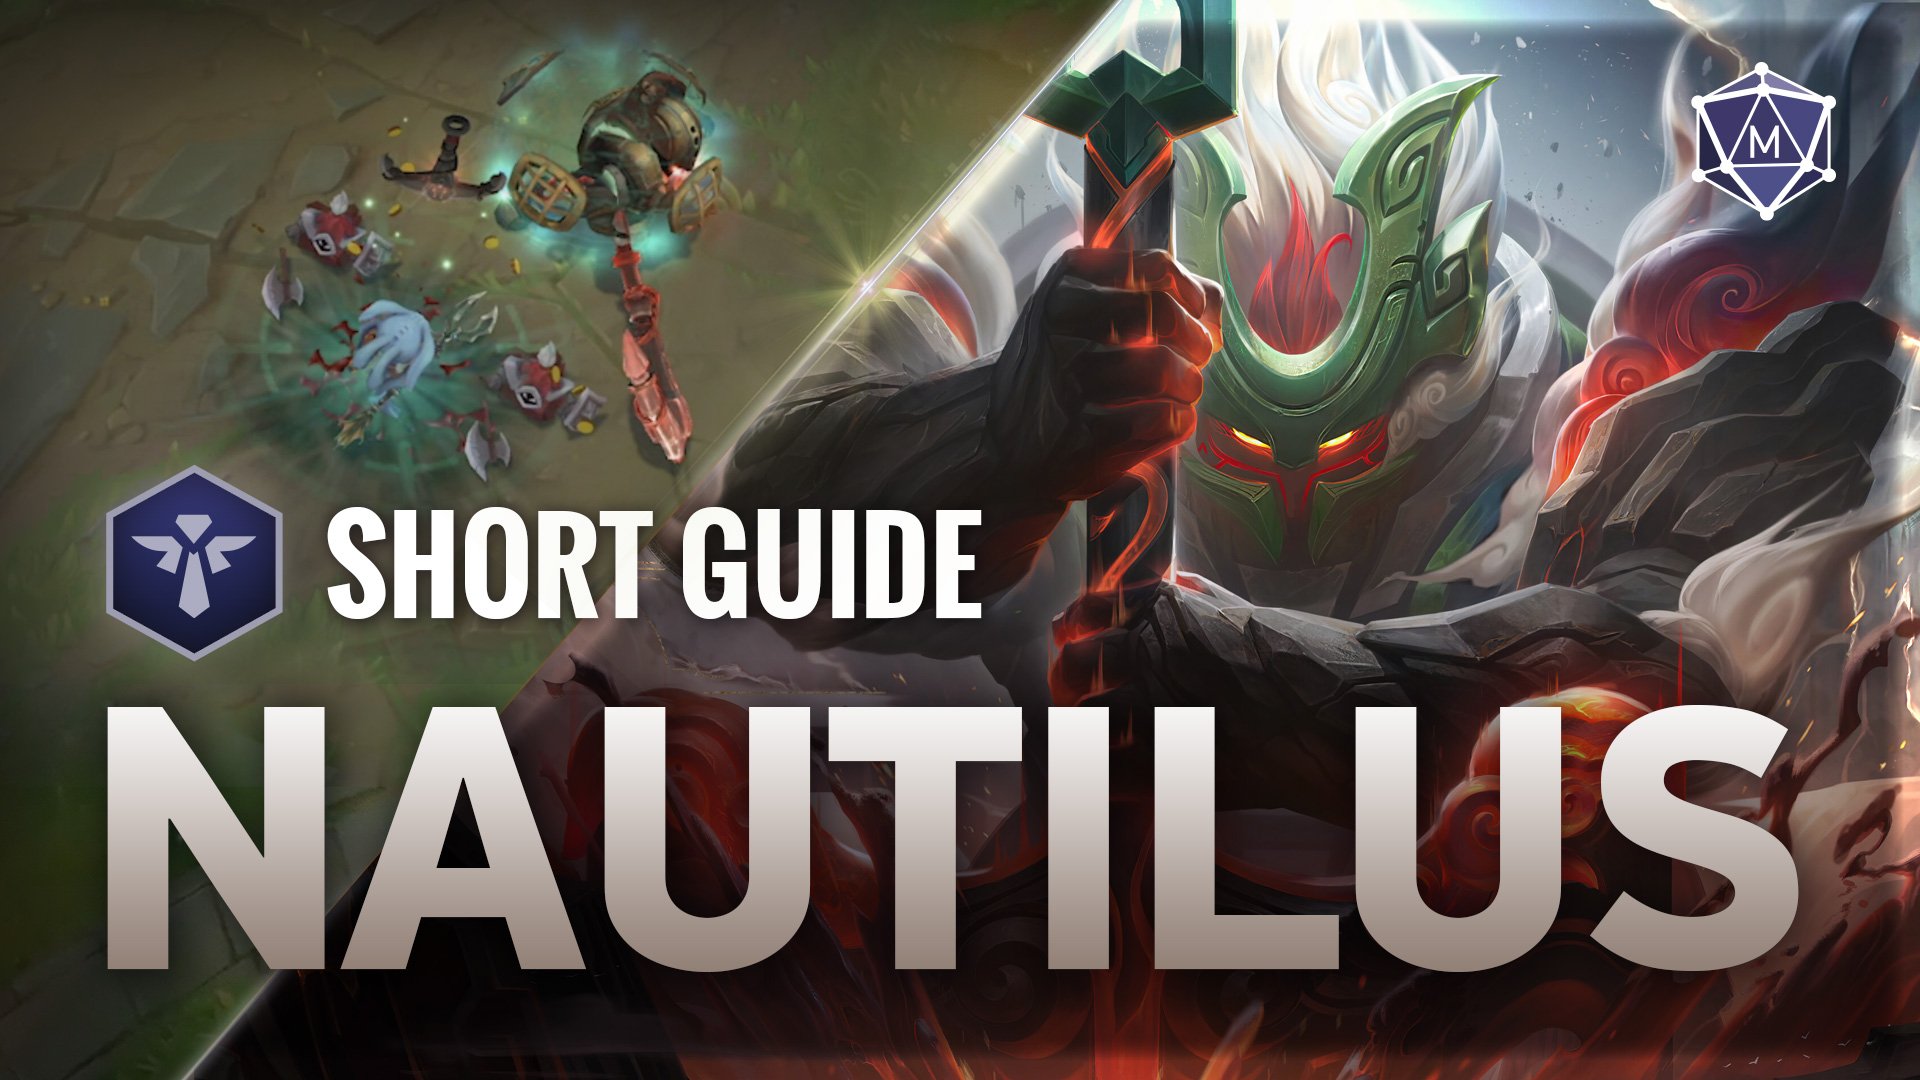 Nautilus expert guide